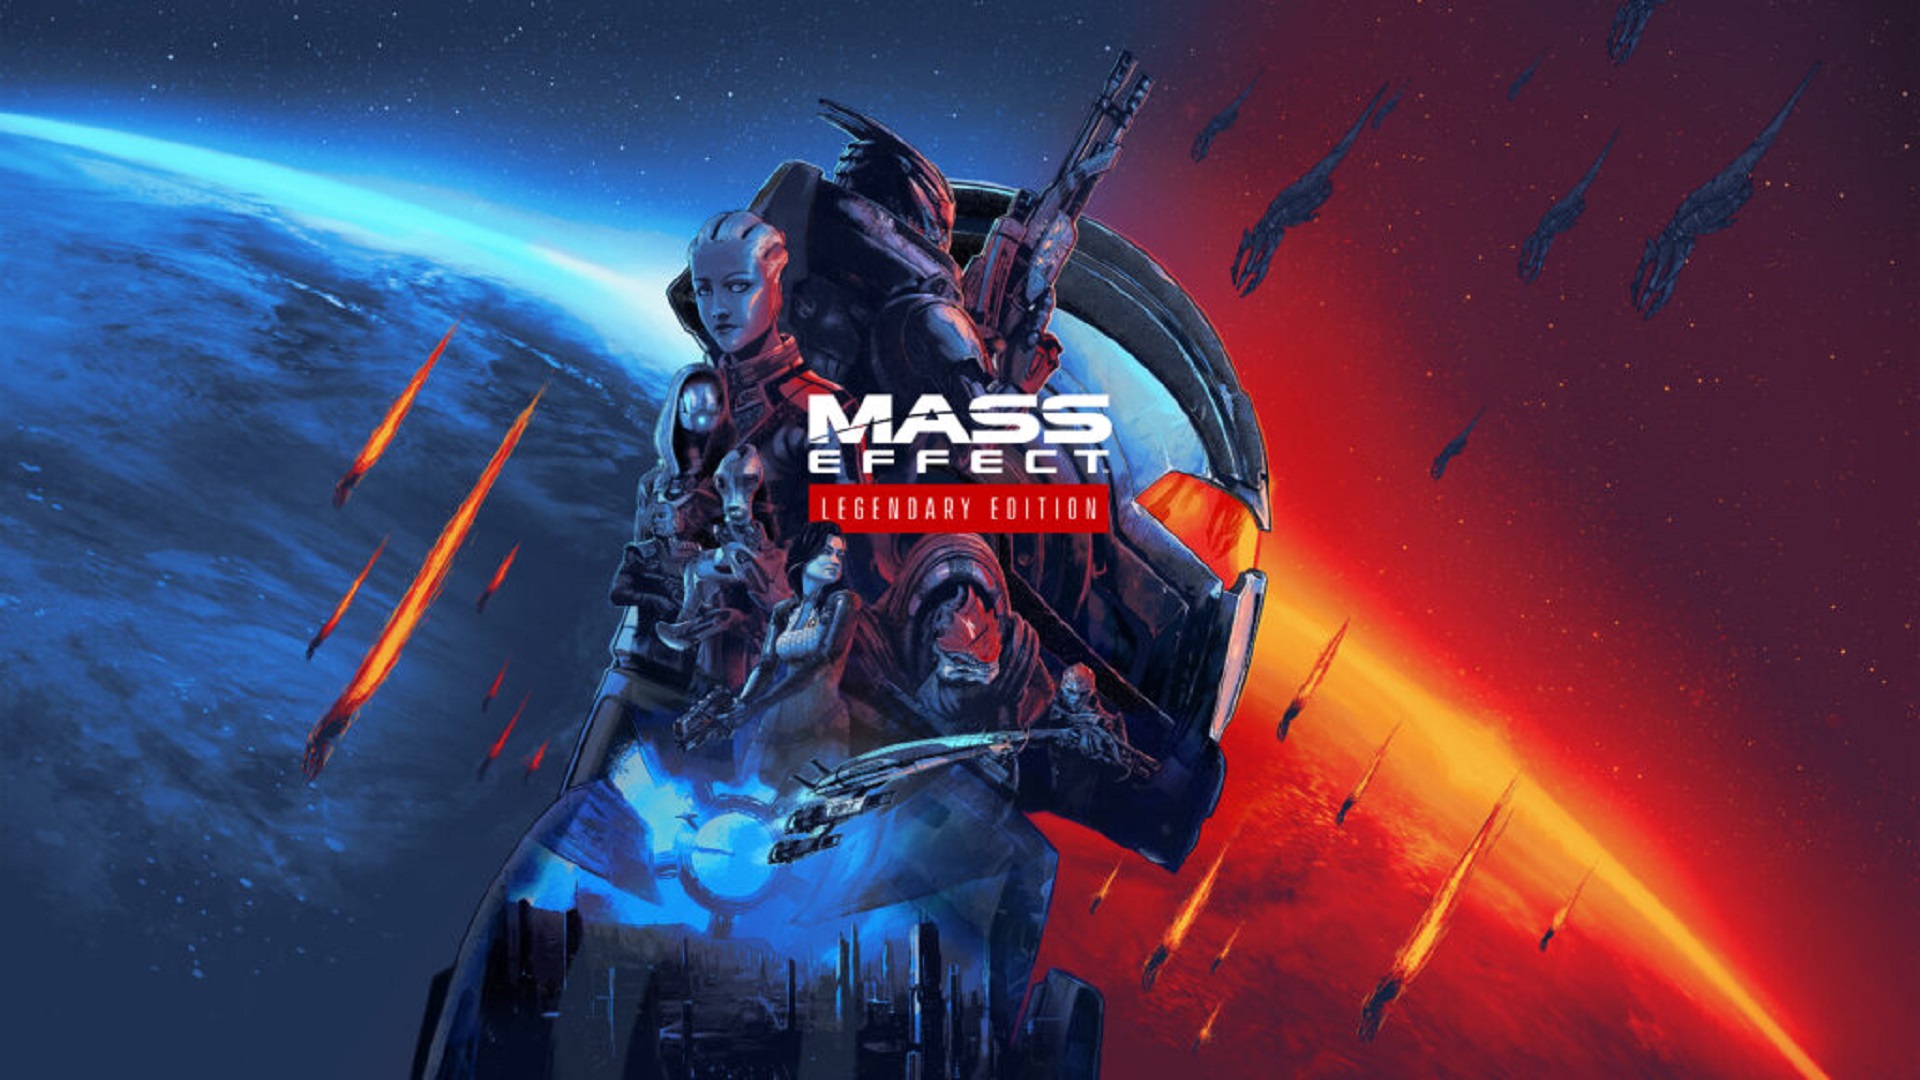 Edición lendaria de Mass Effect